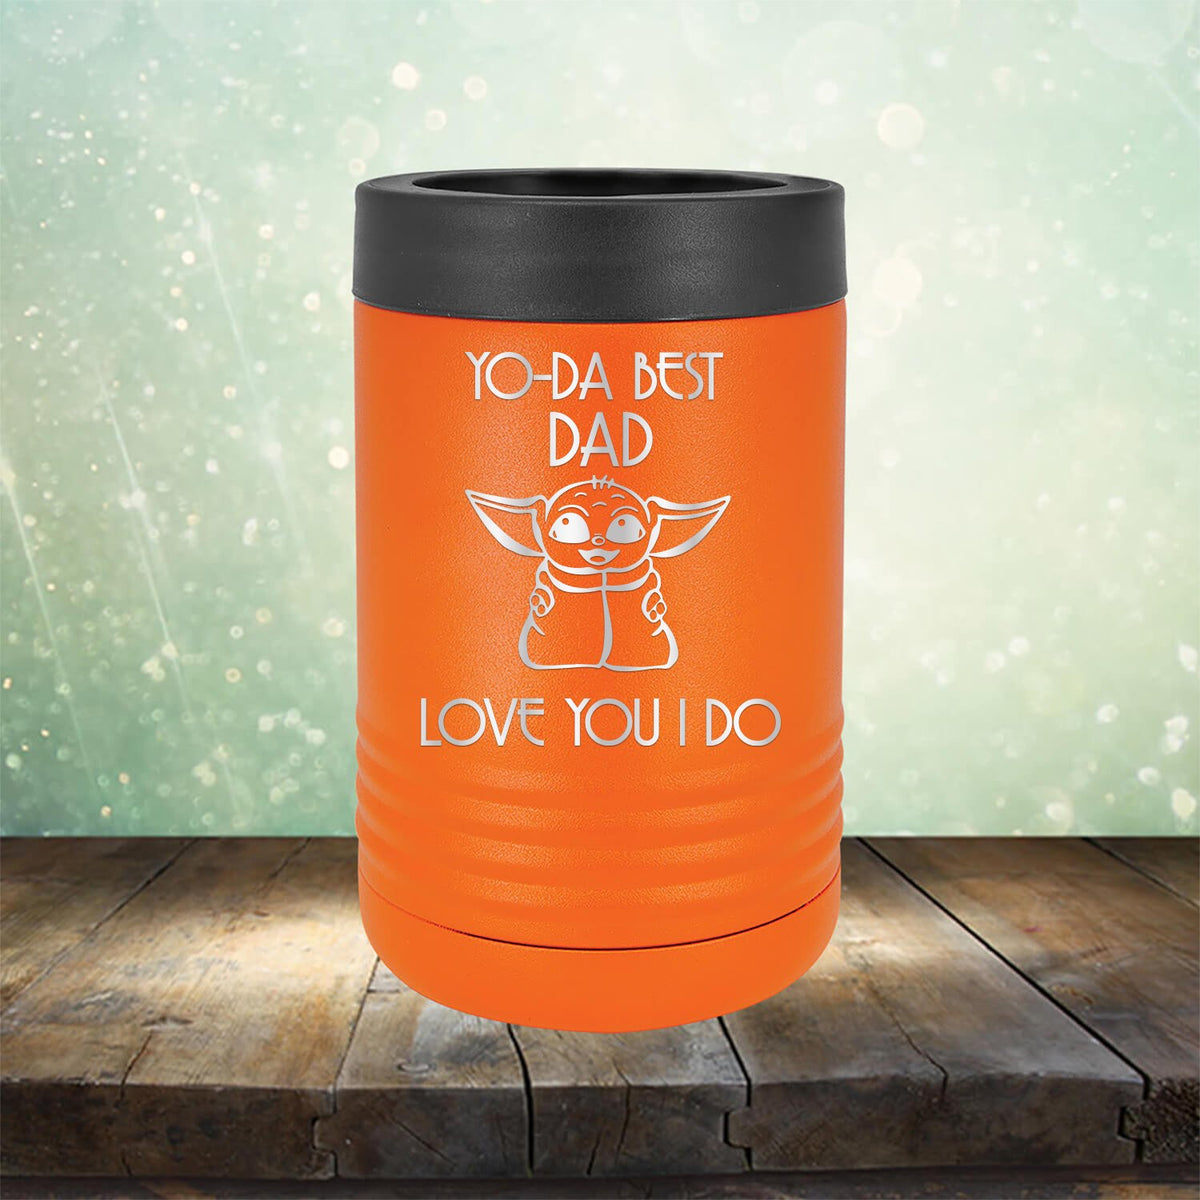 Yo-Da Best Dad Love You I Do - Laser Etched Tumbler Mug